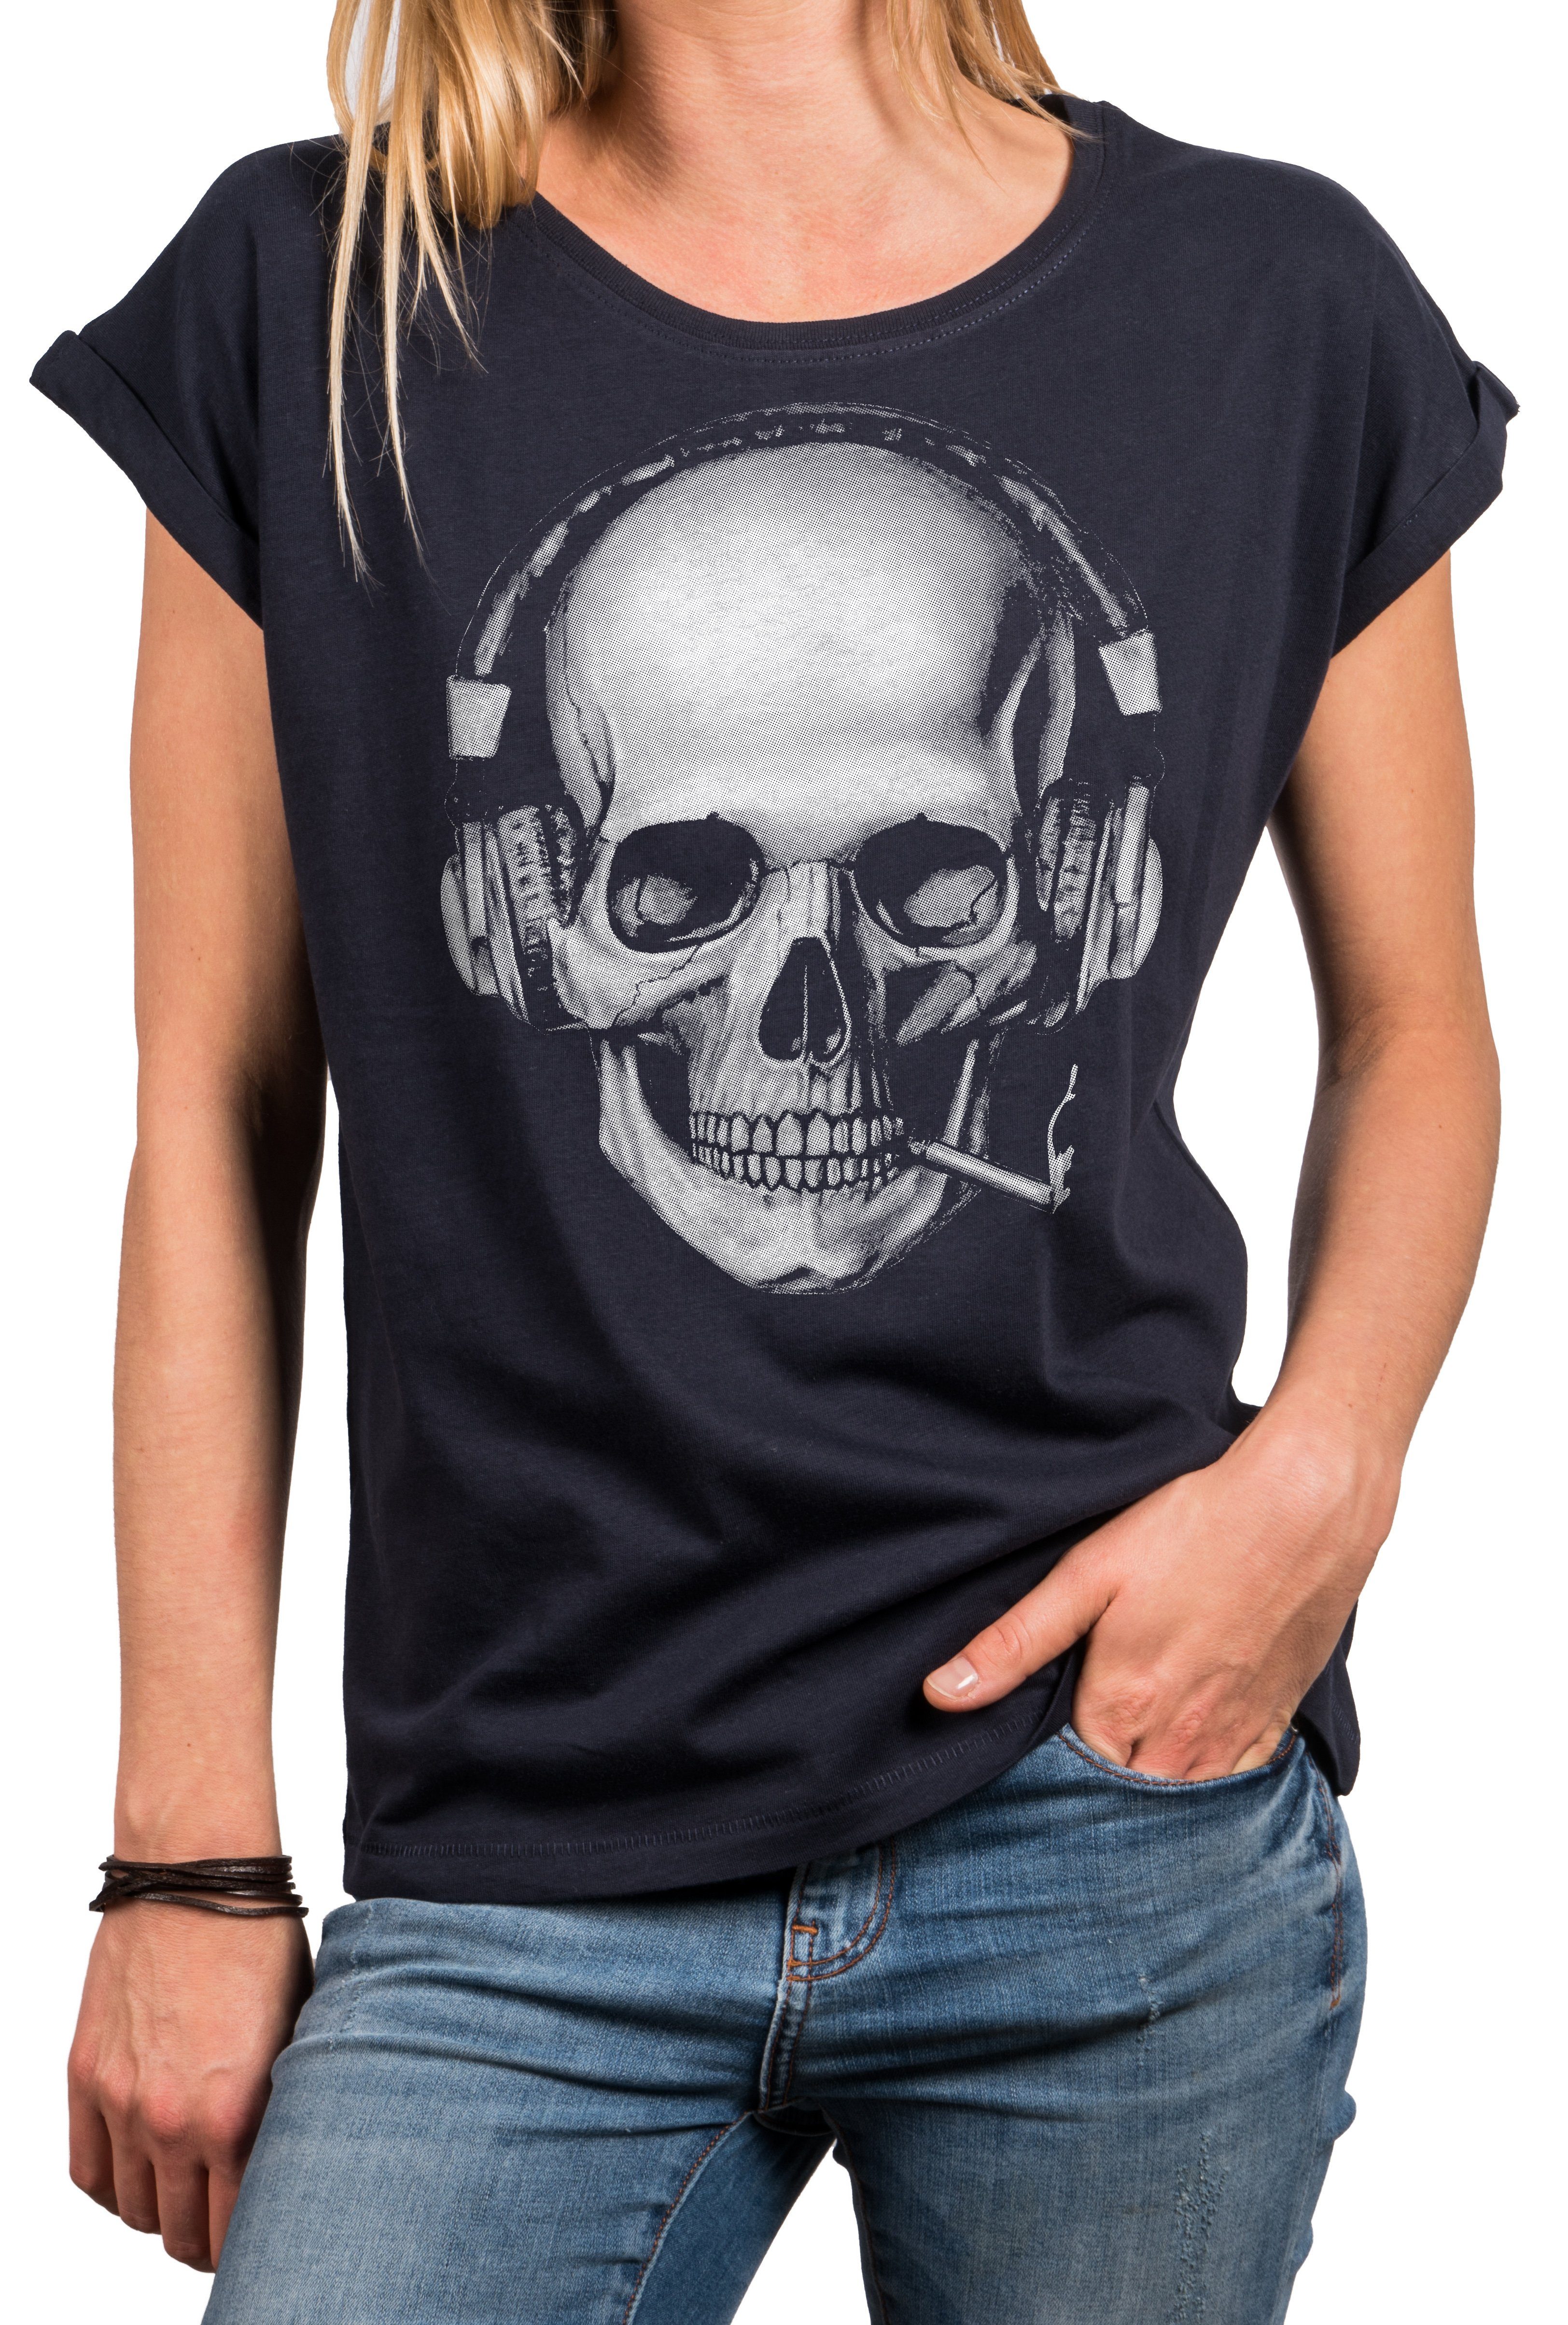 MAKAYA Print-Shirt Damen Totenkopf Aufdruck Blau, Top Rundhals, Cooles Gothic (Kurzarm, Grau) große Baumwolle, Skull mit Schwarz, Design - Größen T-Shirt